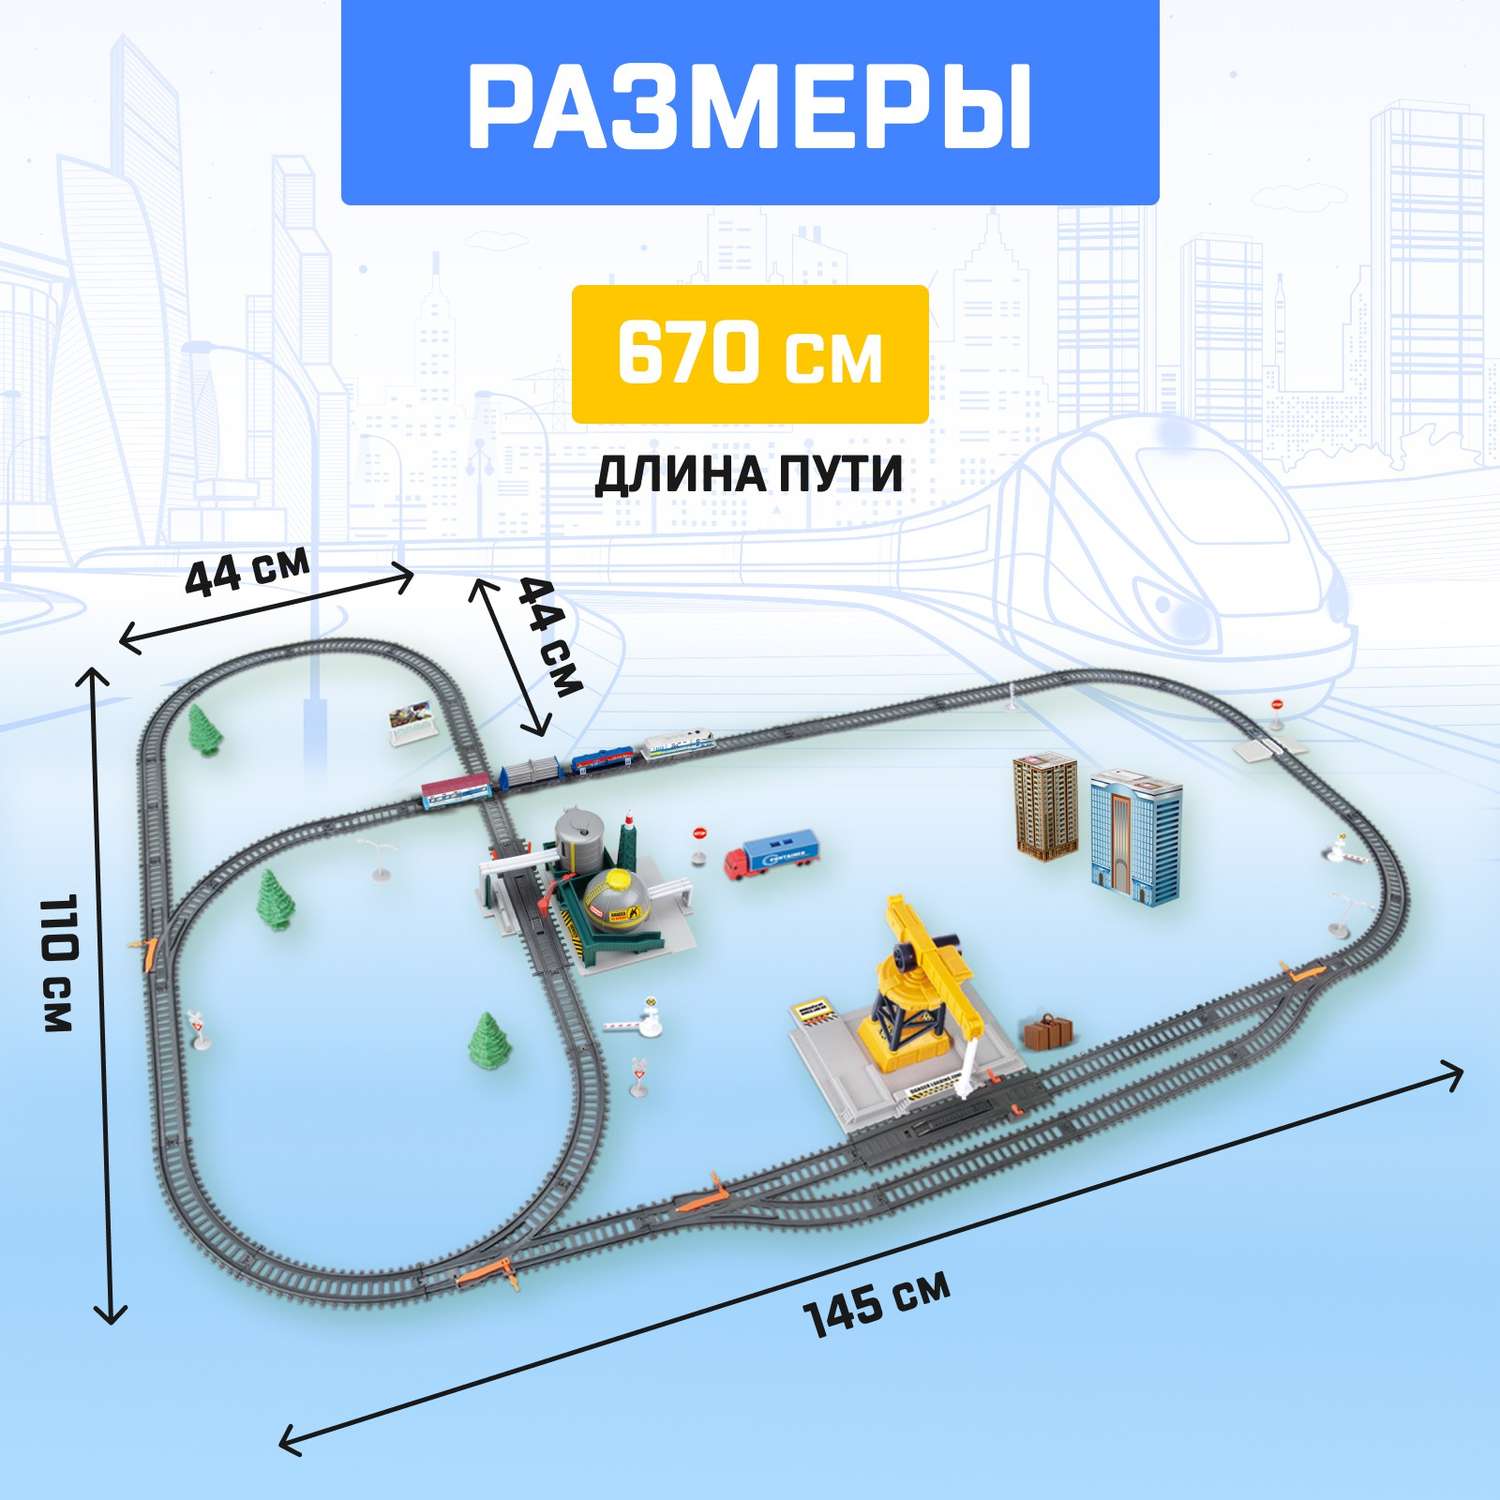 Железная дорога Автоград «Промышленный мегаполис» работает от батареек длина пути 670 см 6781006 - фото 2